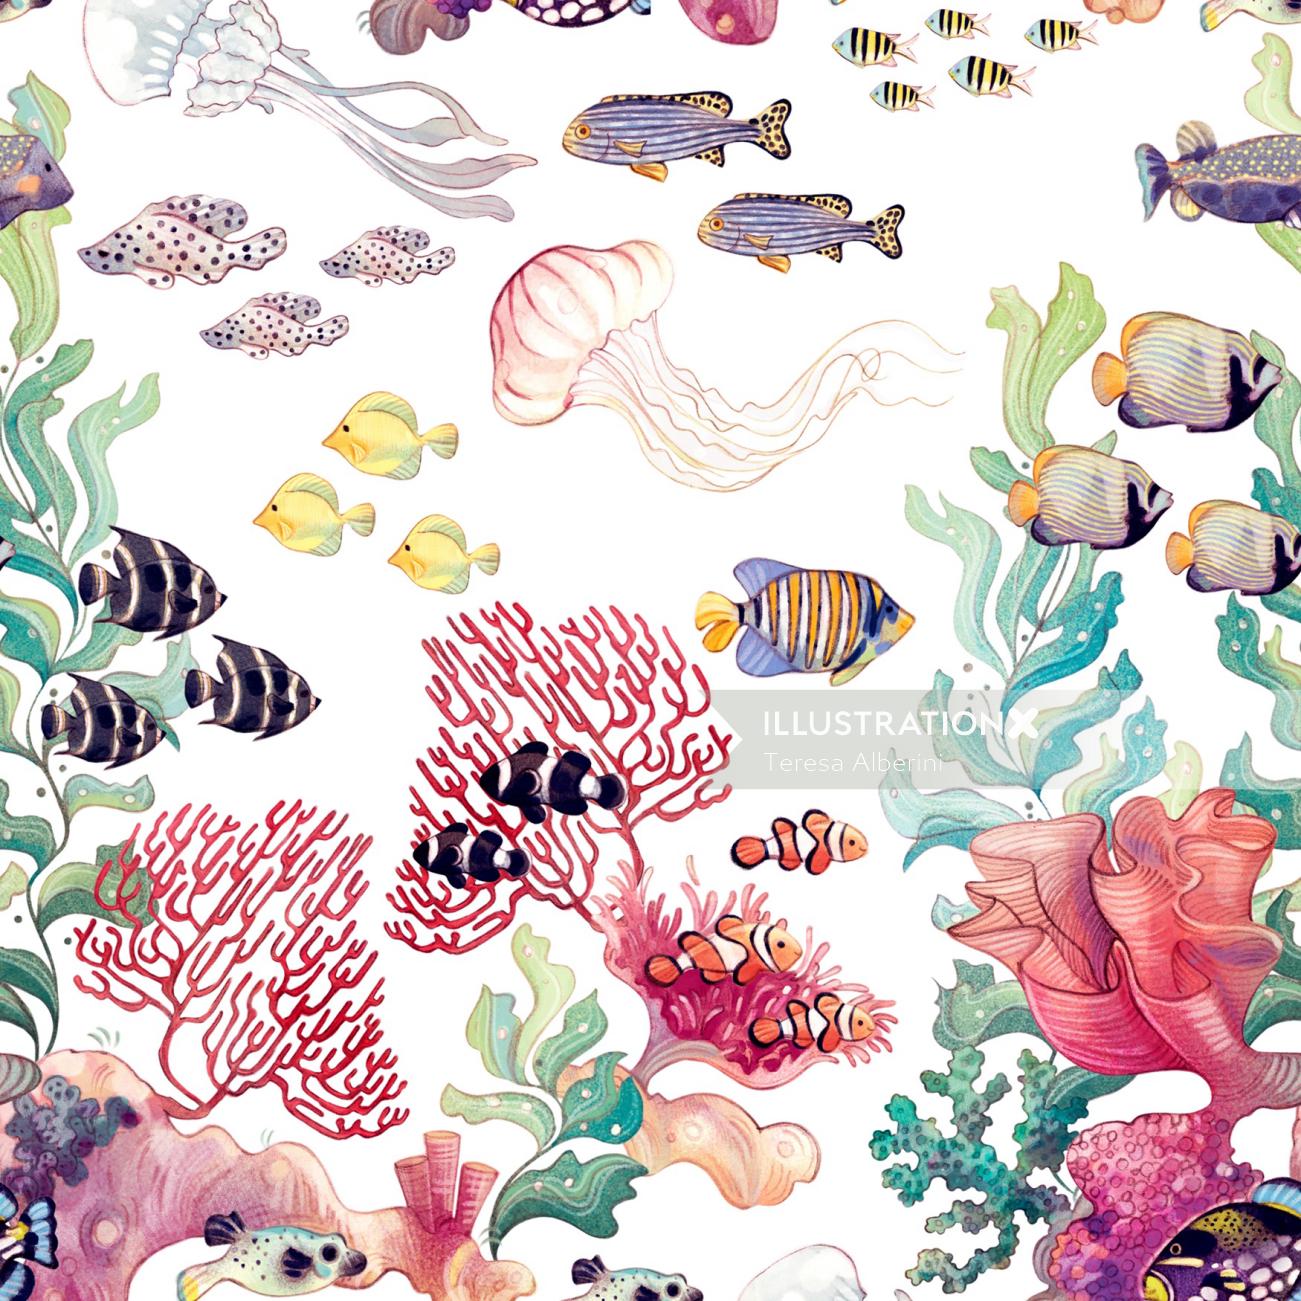 海、水中、サンゴ礁、自然、魚、藻類、サンゴ、クラゲ、装飾、パターン